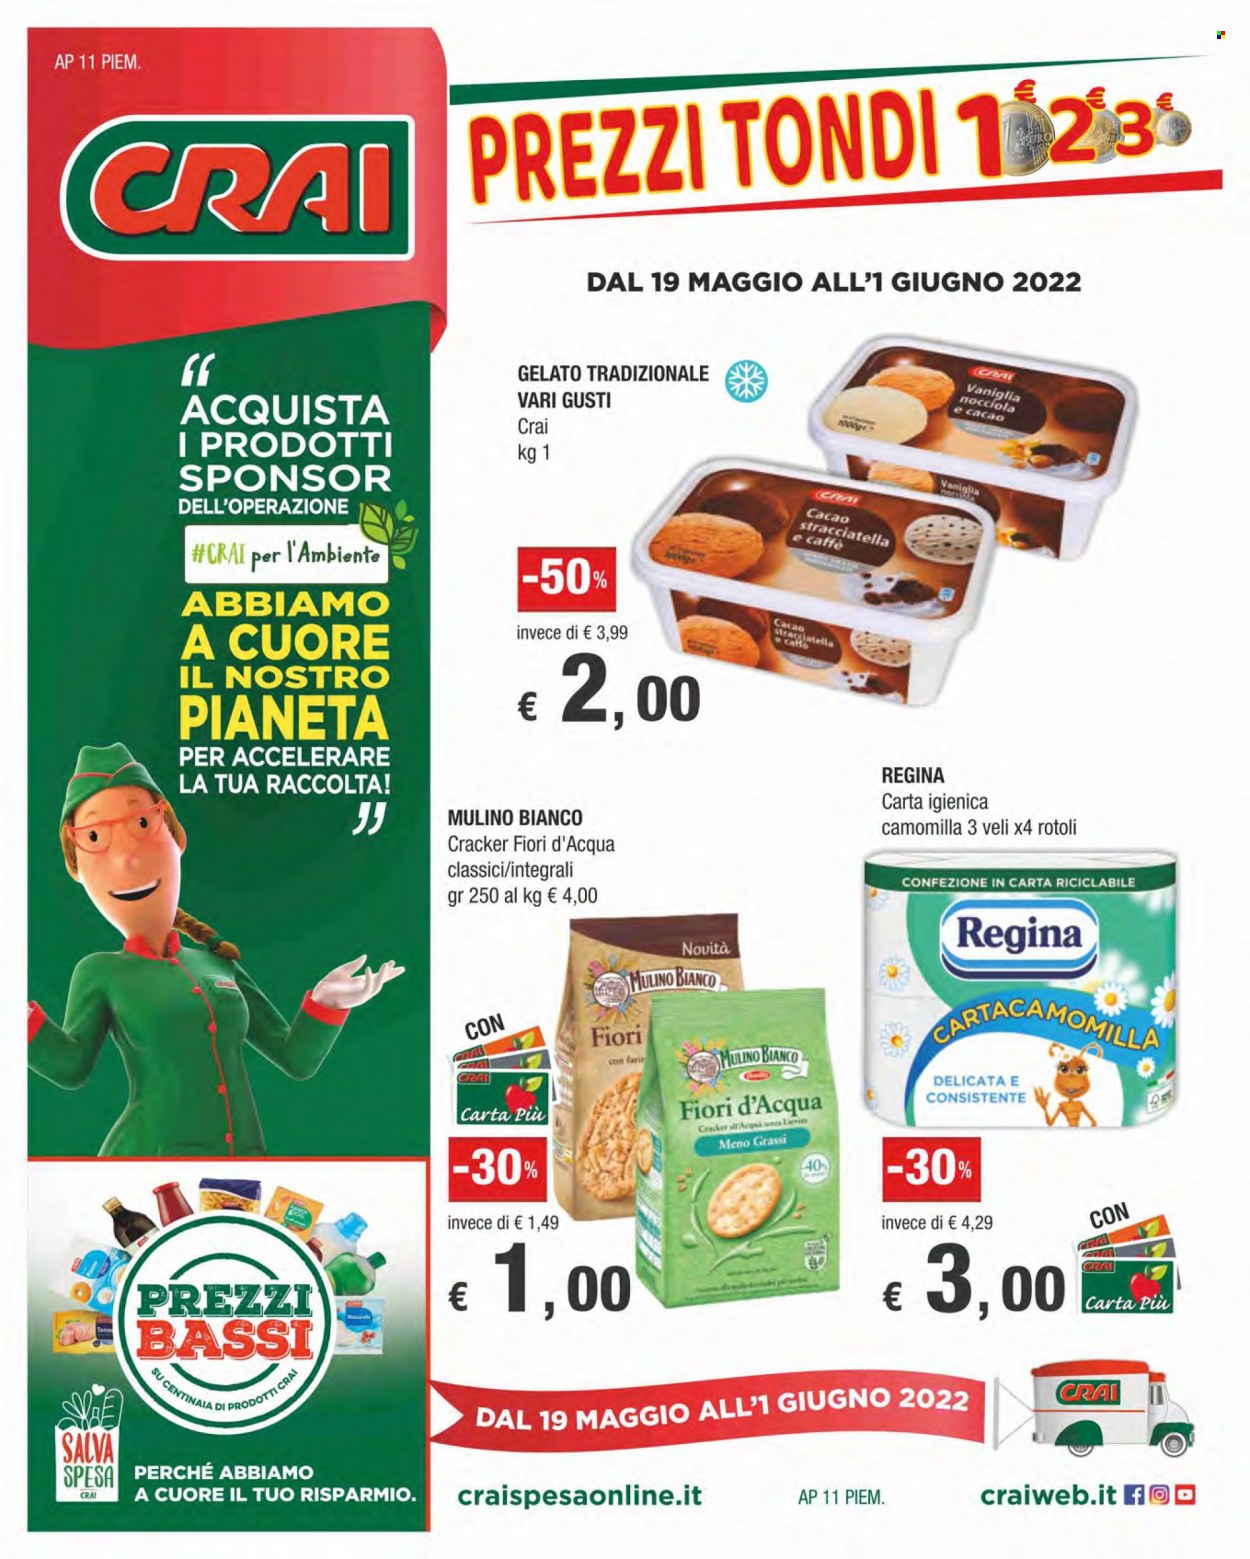 thumbnail - Volantino CRAI - 19/5/2022 - 1/6/2022 - Prodotti in offerta - crackers, Fiori d'Acqua, Mulino Bianco, gelato, carta igienica, Regina. Pagina 1.